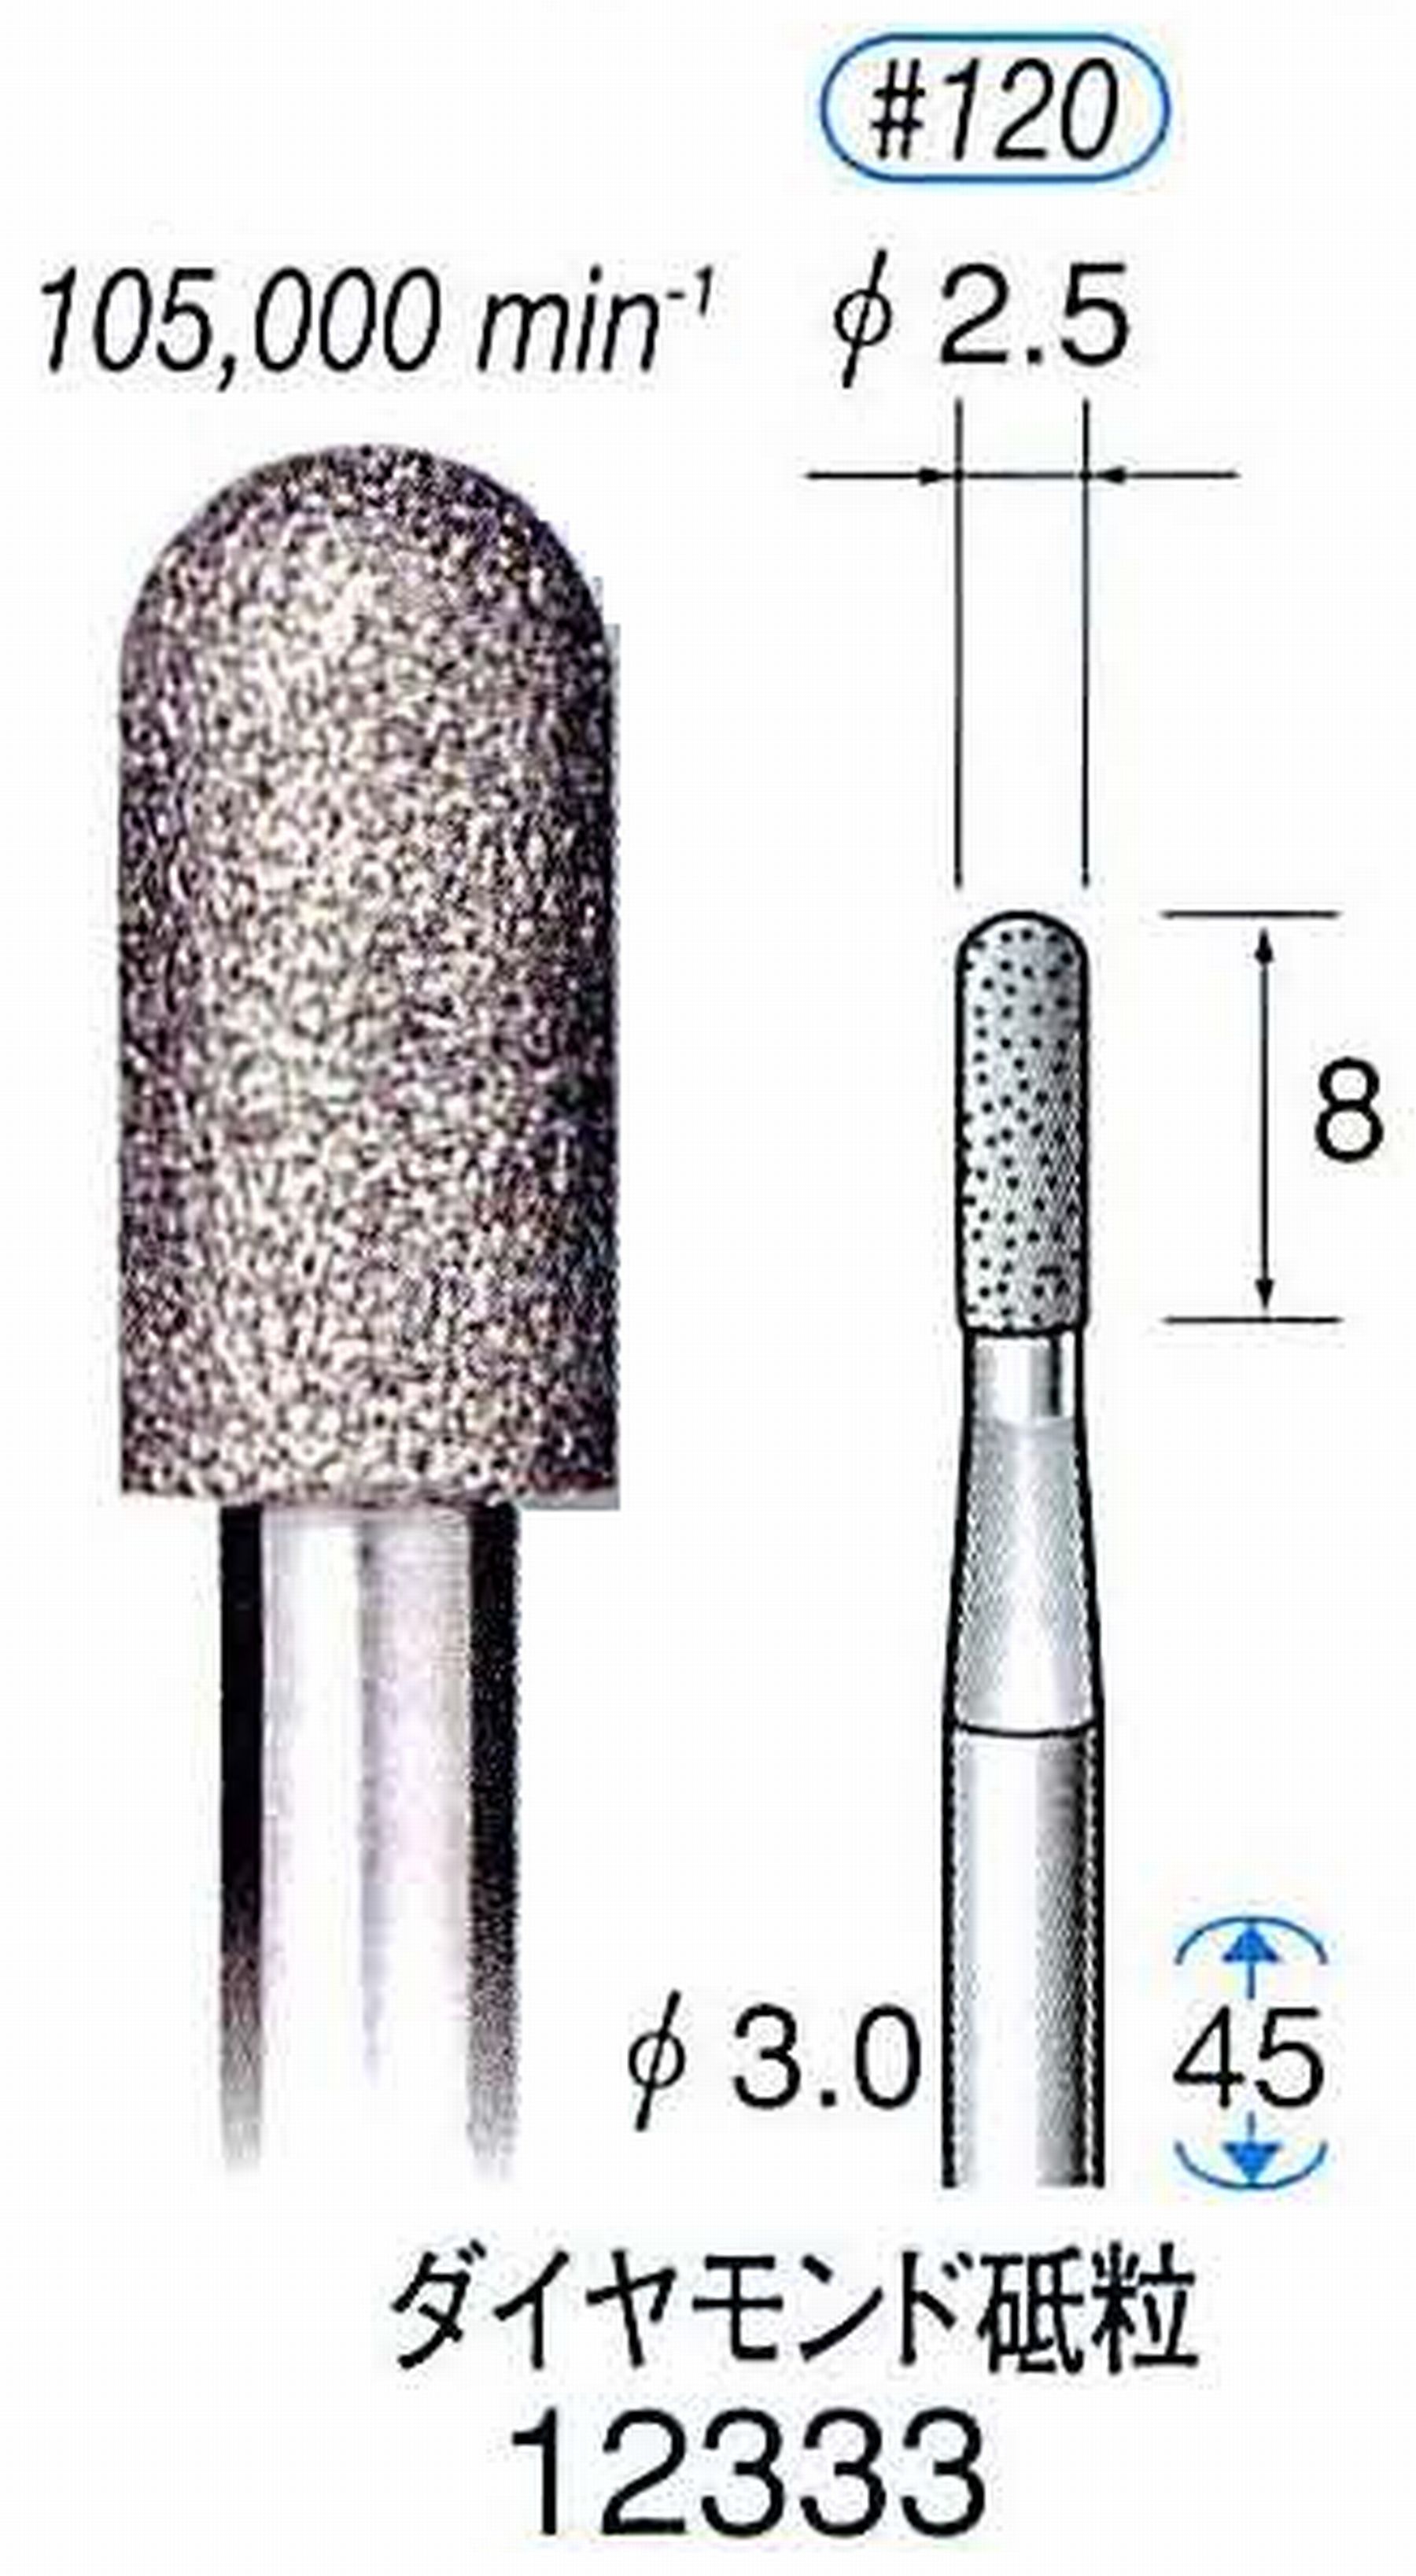 ナカニシ/NAKANISHI 電着ダイヤモンド ダイヤモンド砥粒 軸径(シャンク)φ3.0mm 12333